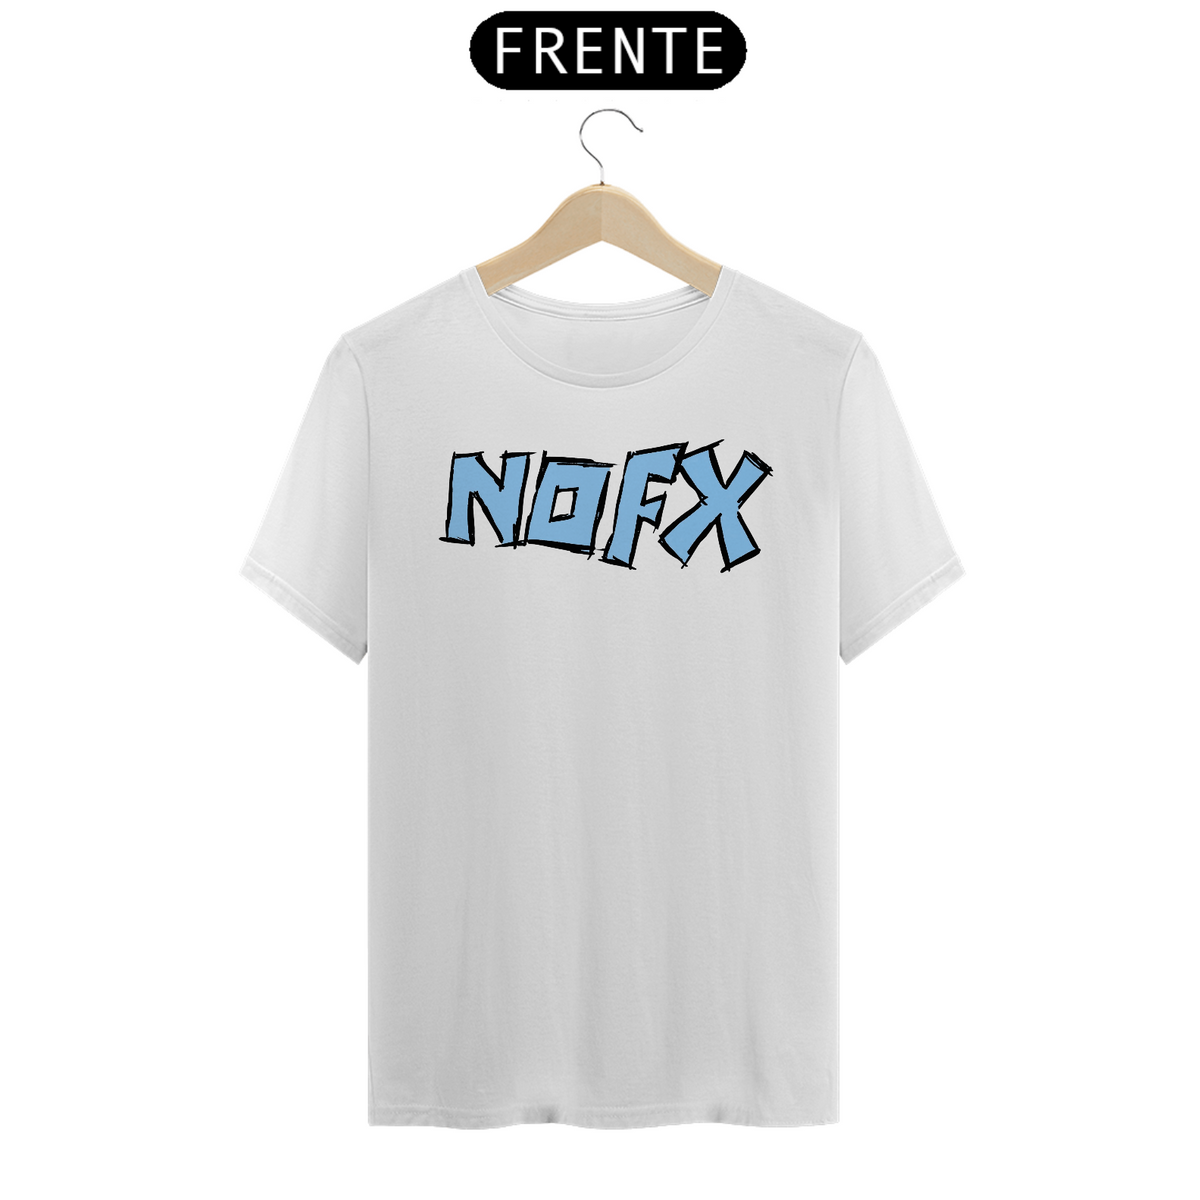 Nome do produto: NOFX